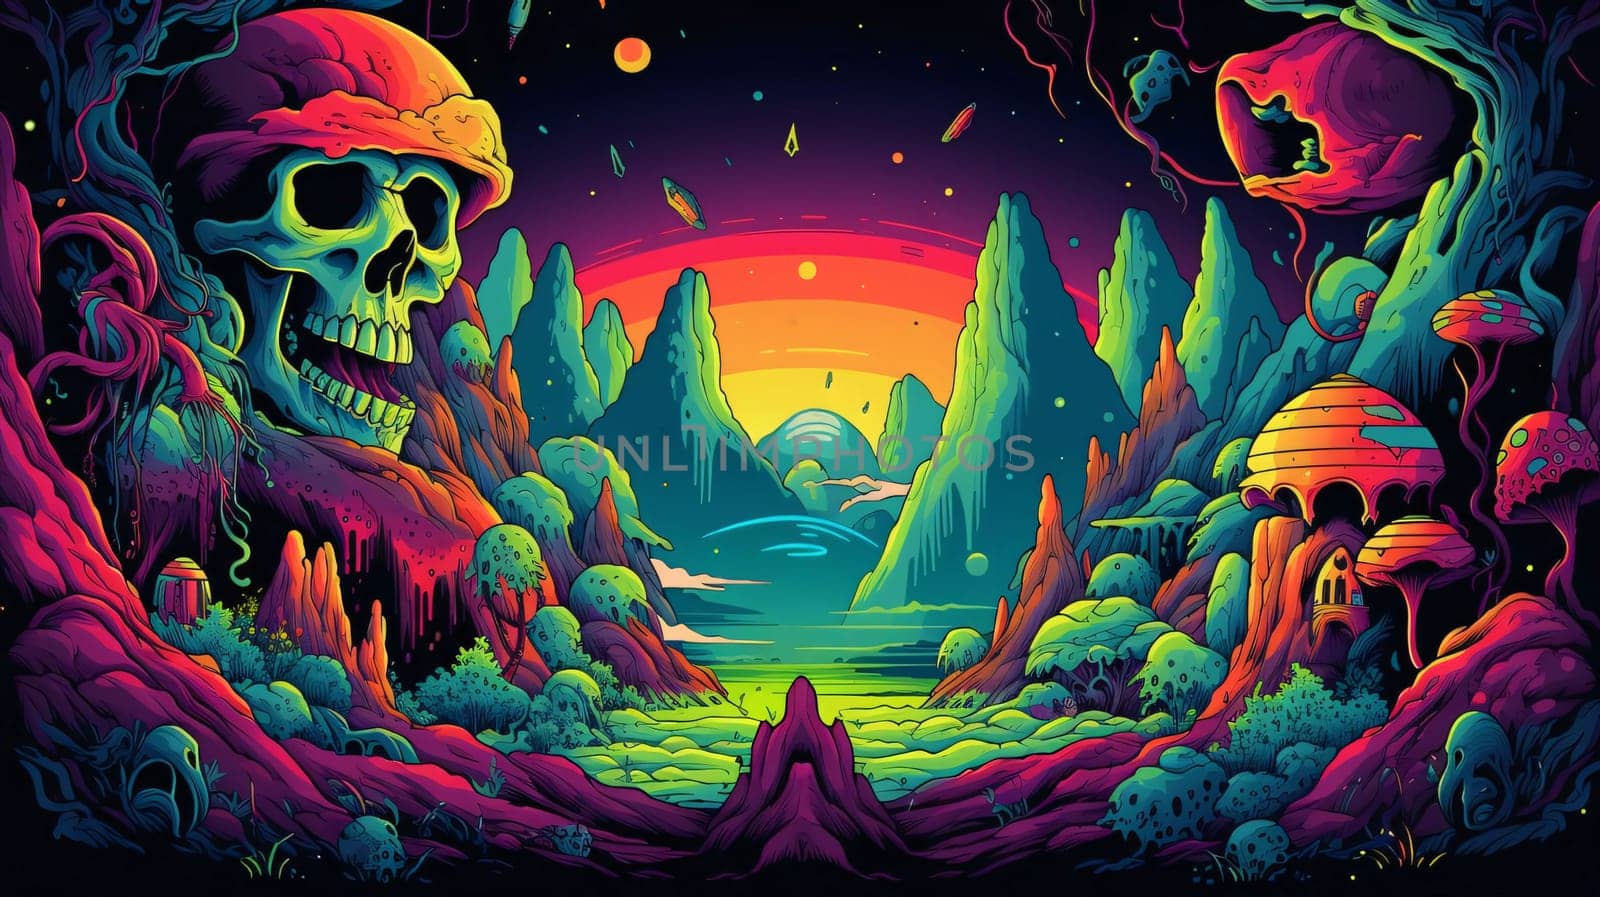 Banner: Skull in the desert. Fantasy landscape. Cartoon style. Vector illustration.